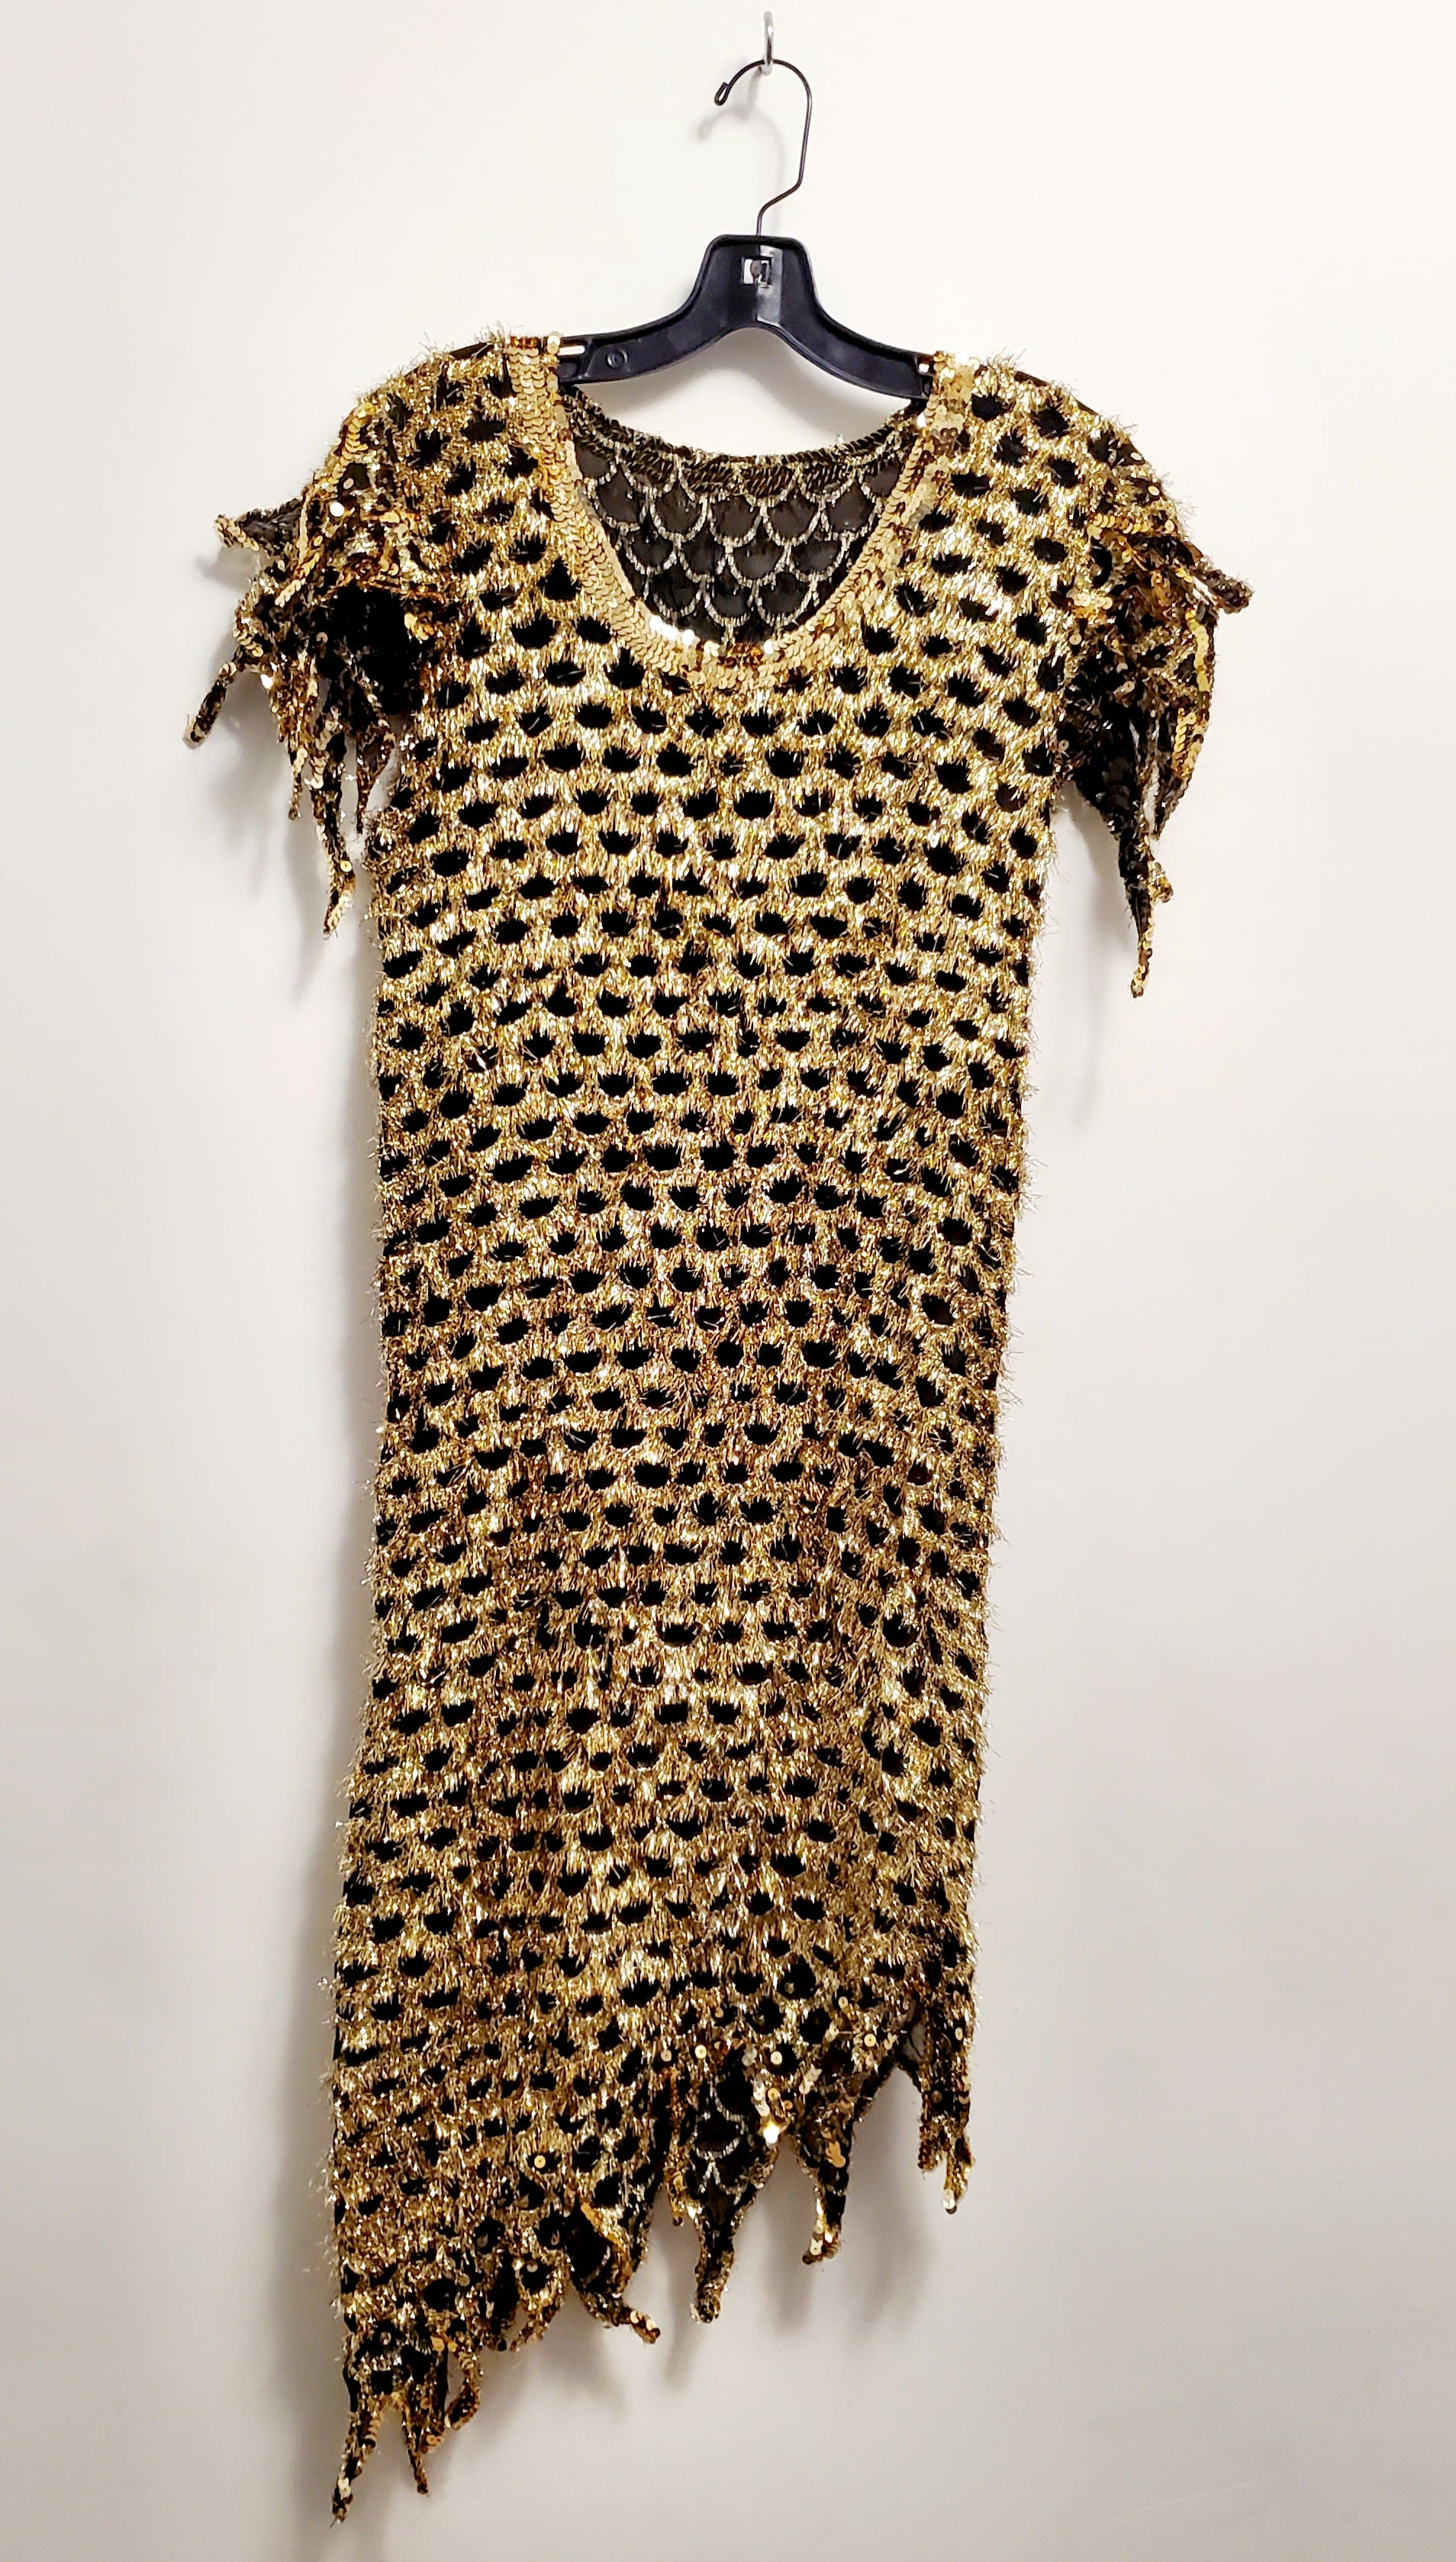 GLAMAZON-80s black and gold fringe dress